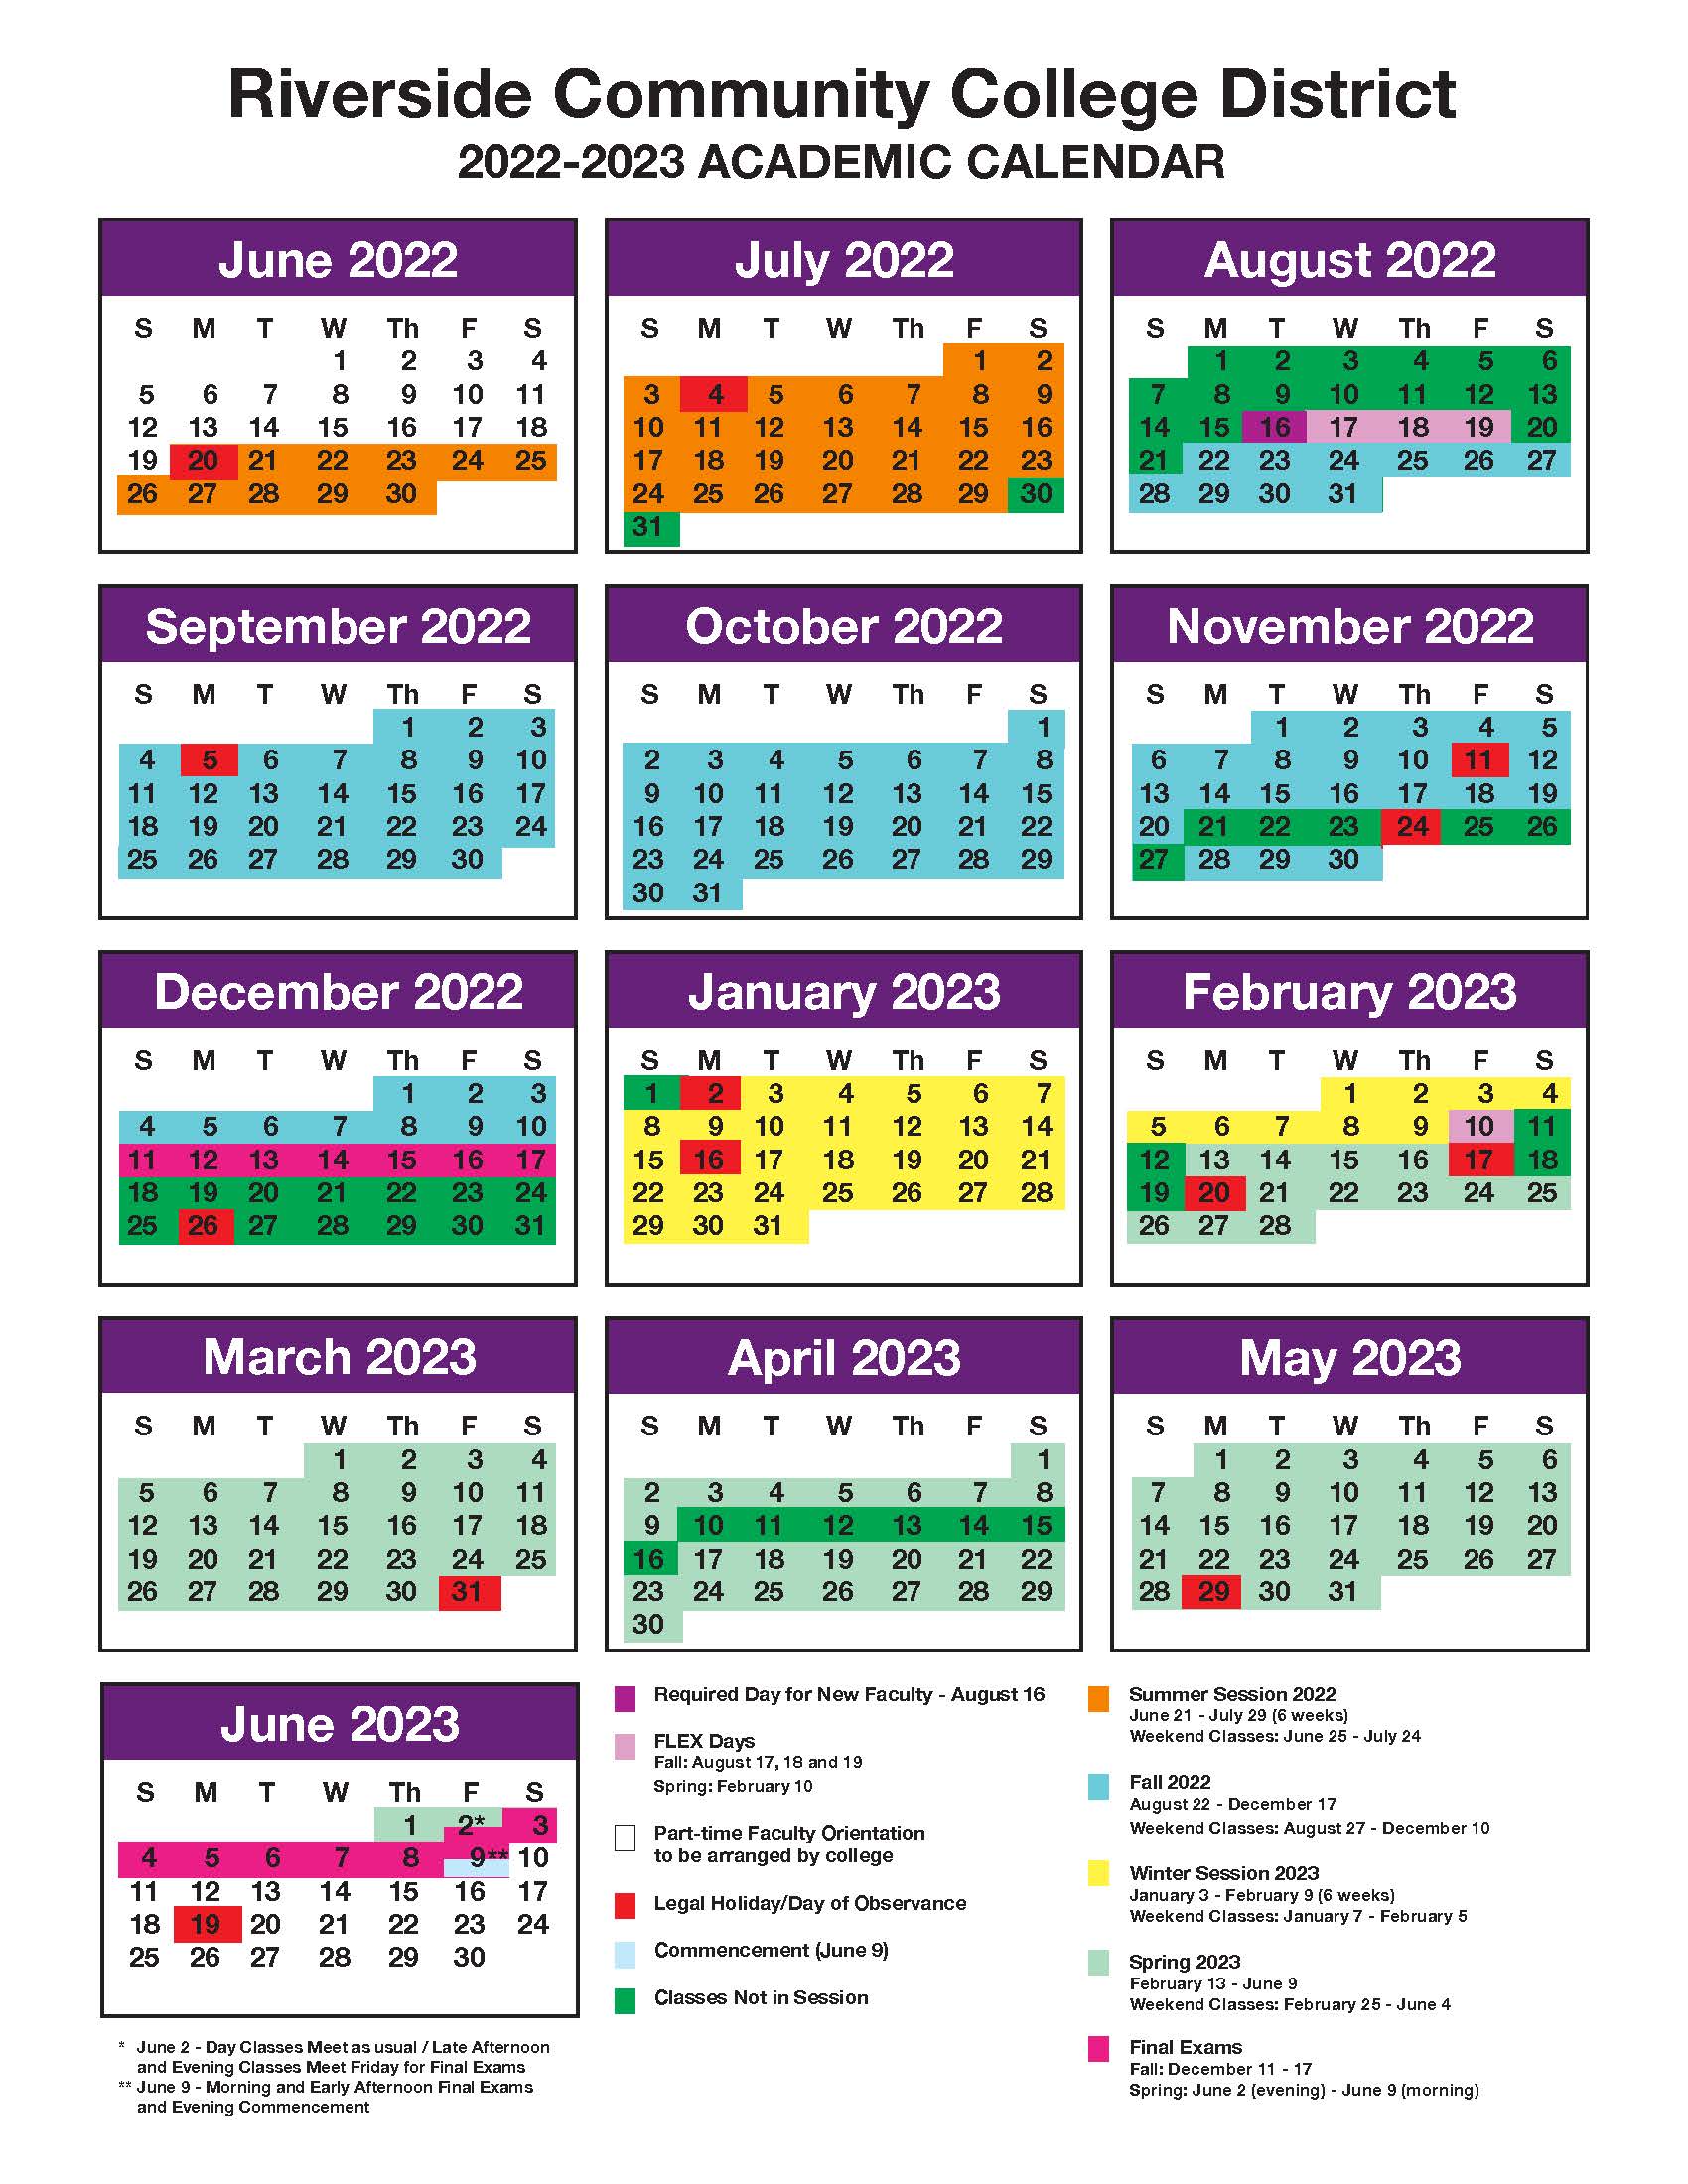 Calendar for the 2022-23 season